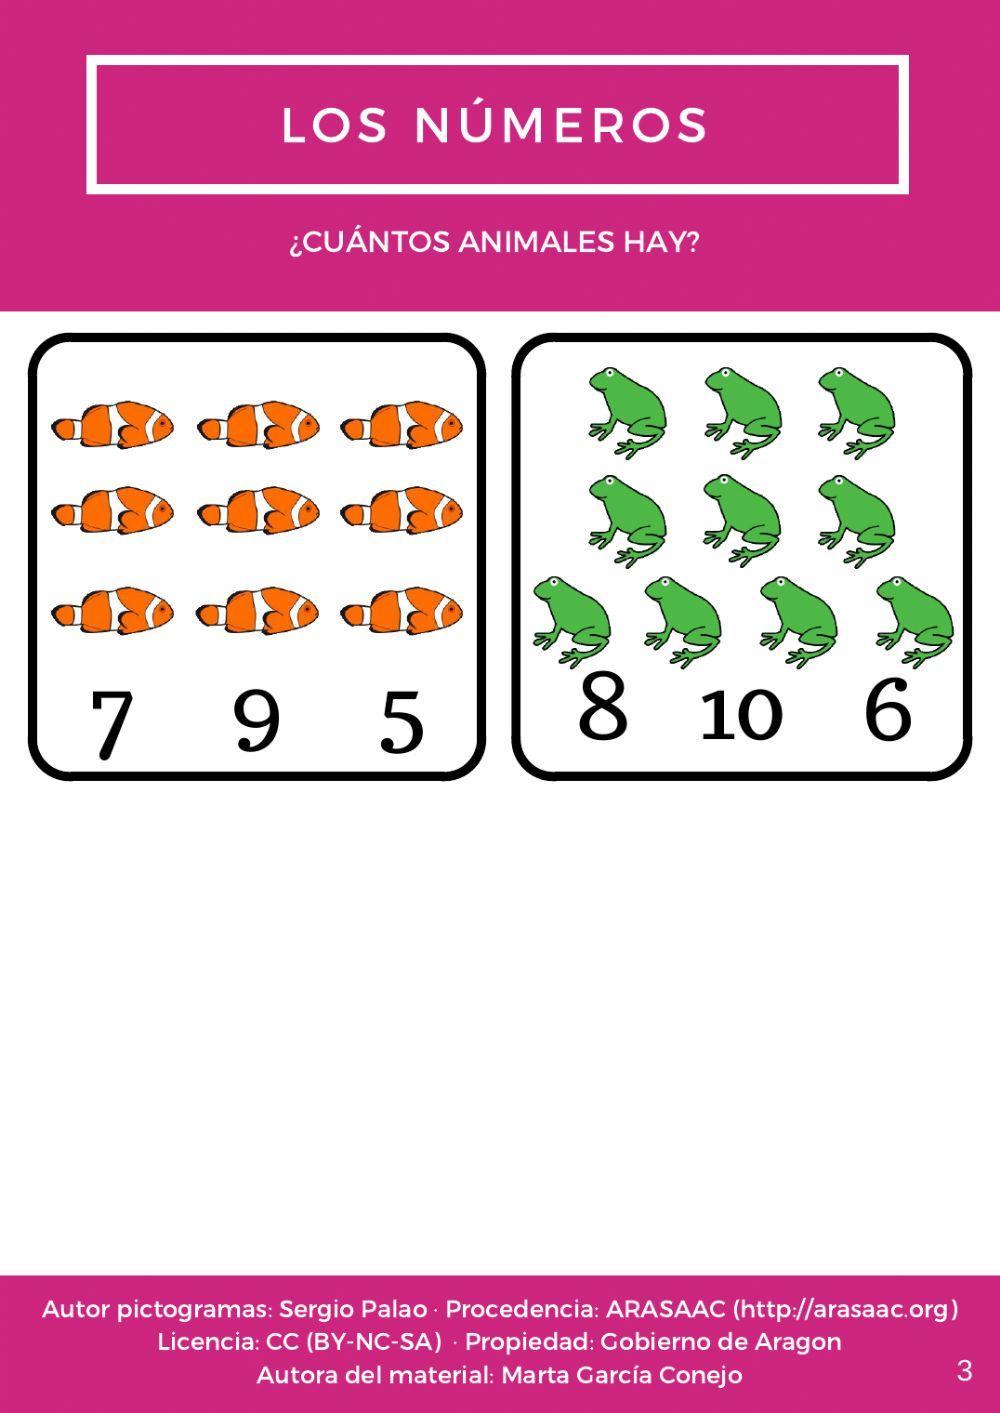 ¿Cuántos animales hay?